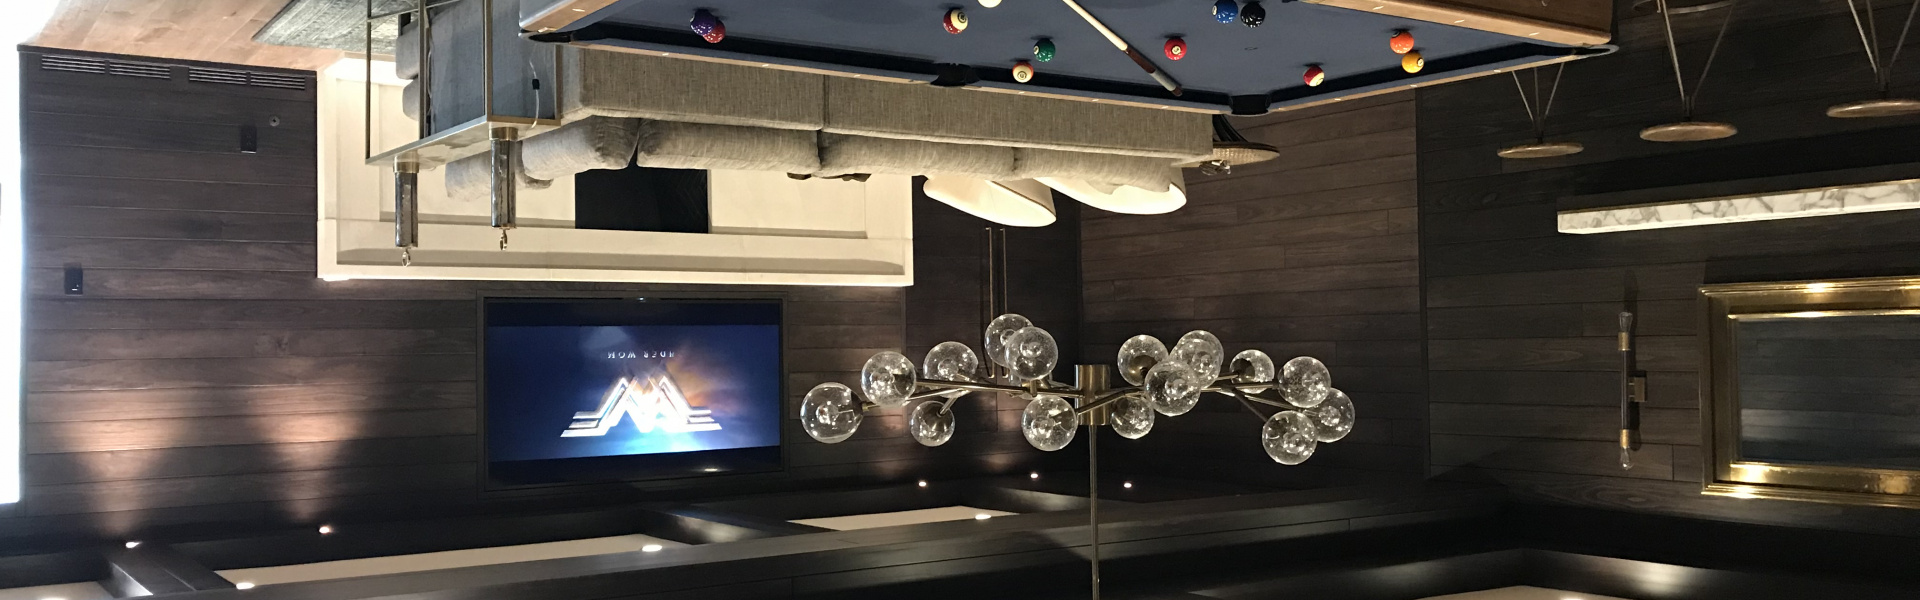 Smart home installation by Modern Media Innovations for Cincinnati